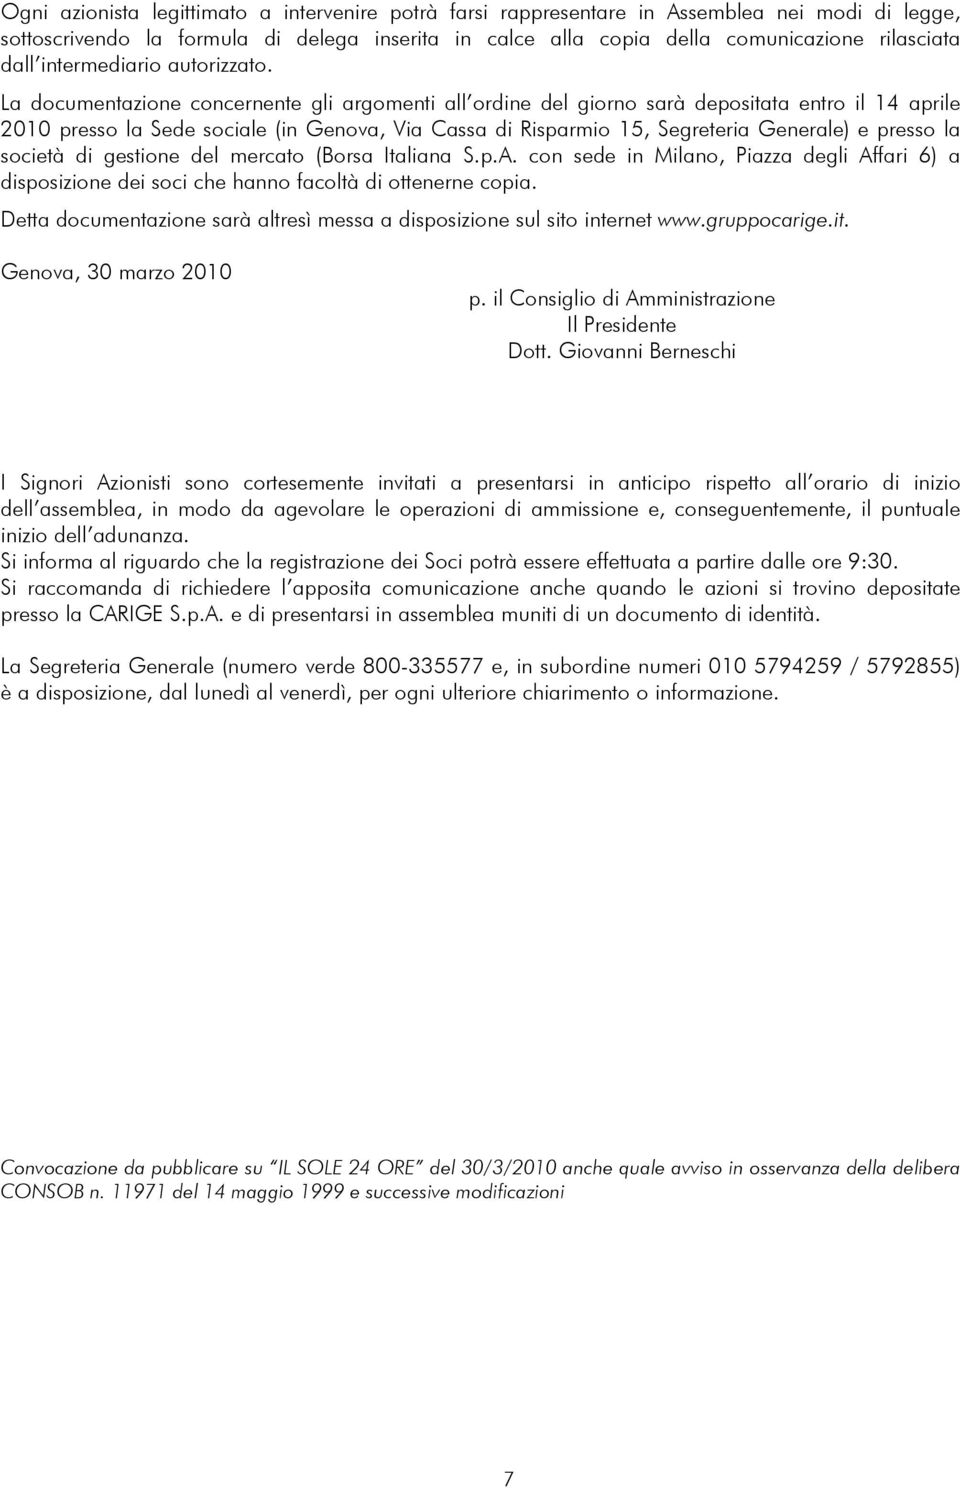 La documentazione concernente gli argomenti all ordine del giorno sarà depositata entro il 14 aprile 2010 presso la Sede sociale (in Genova, Via Cassa di Risparmio 15, Segreteria Generale) e presso